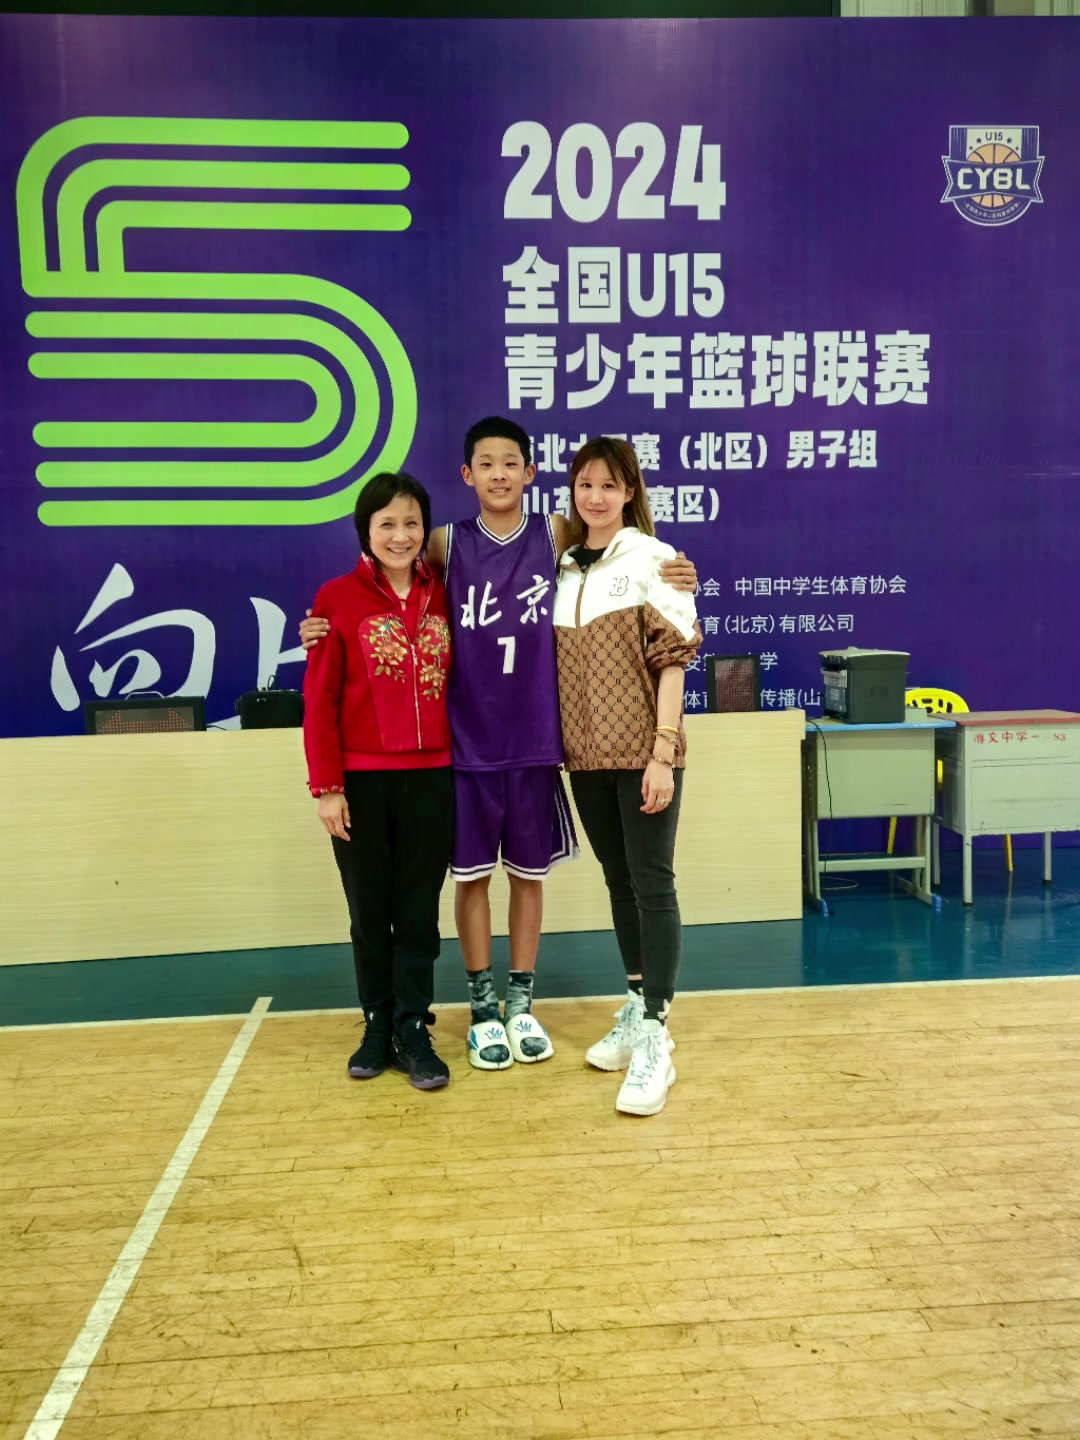 杜锋儿子参加全国U15青少年篮球联赛身高超过妈妈&姥姥